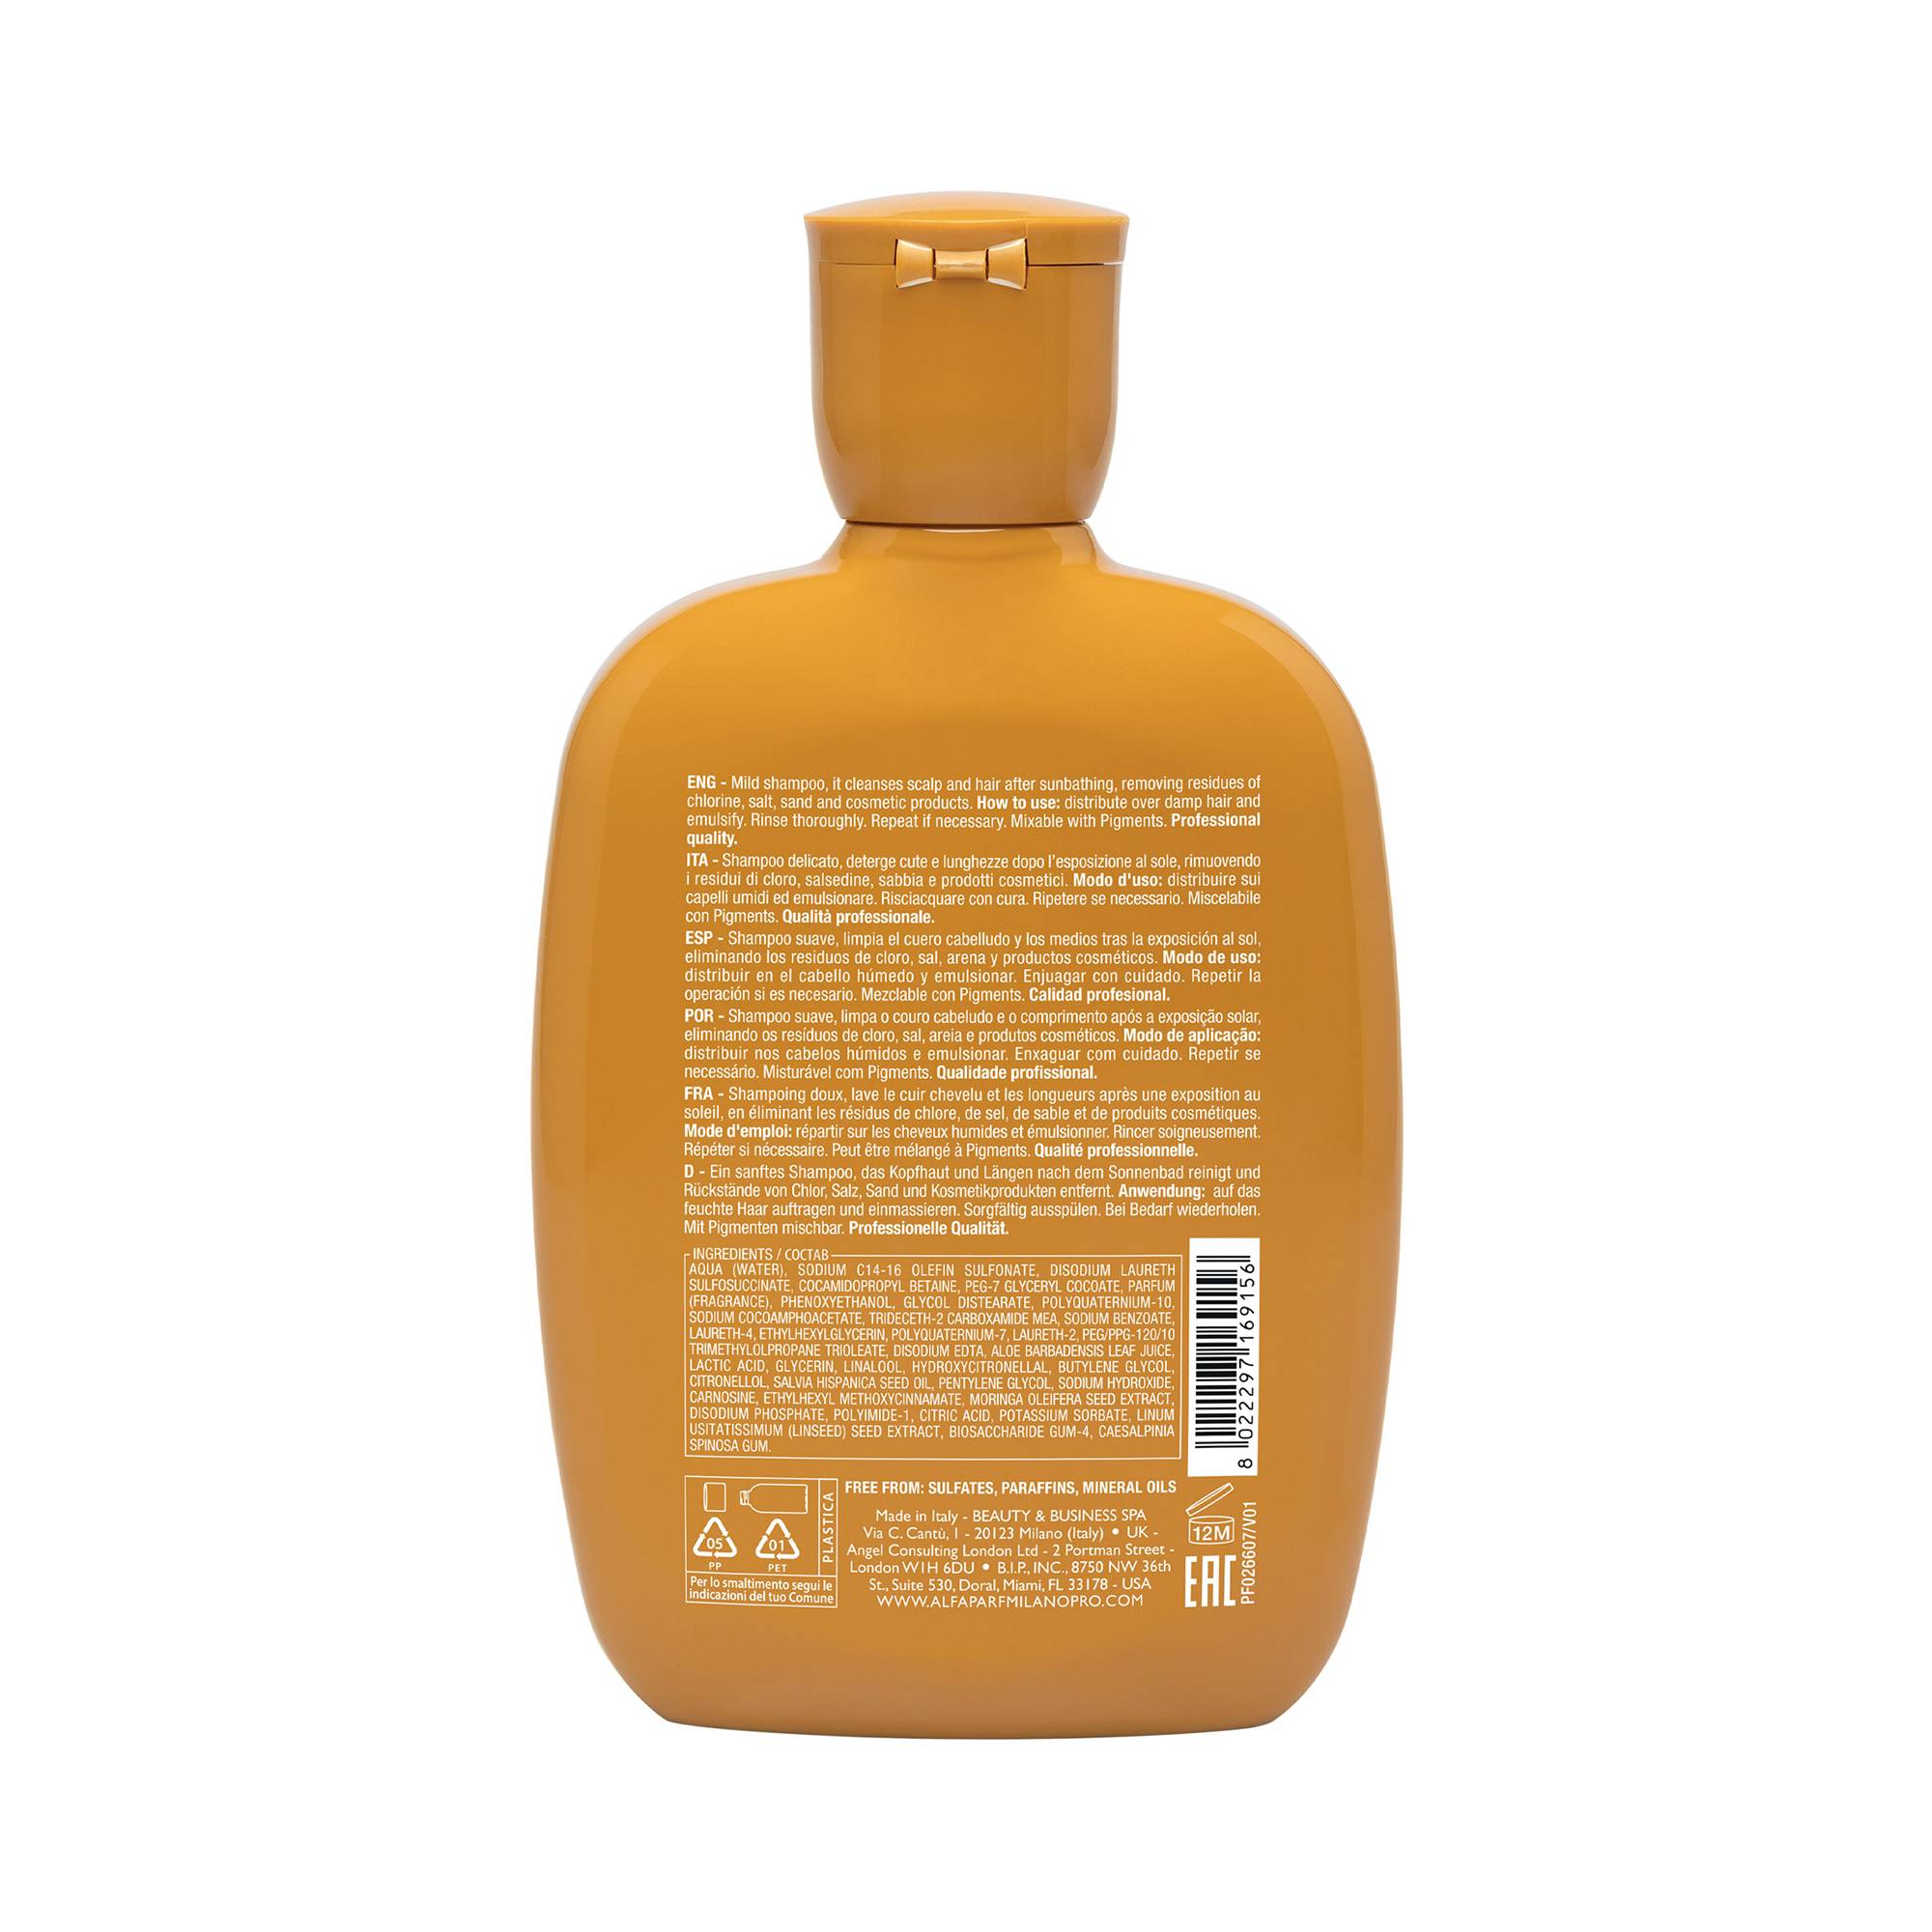 Shampoing doux après-soleil Semi Di lino Sunshine de la marque Alfaparf Milano Contenance 250ml - 2